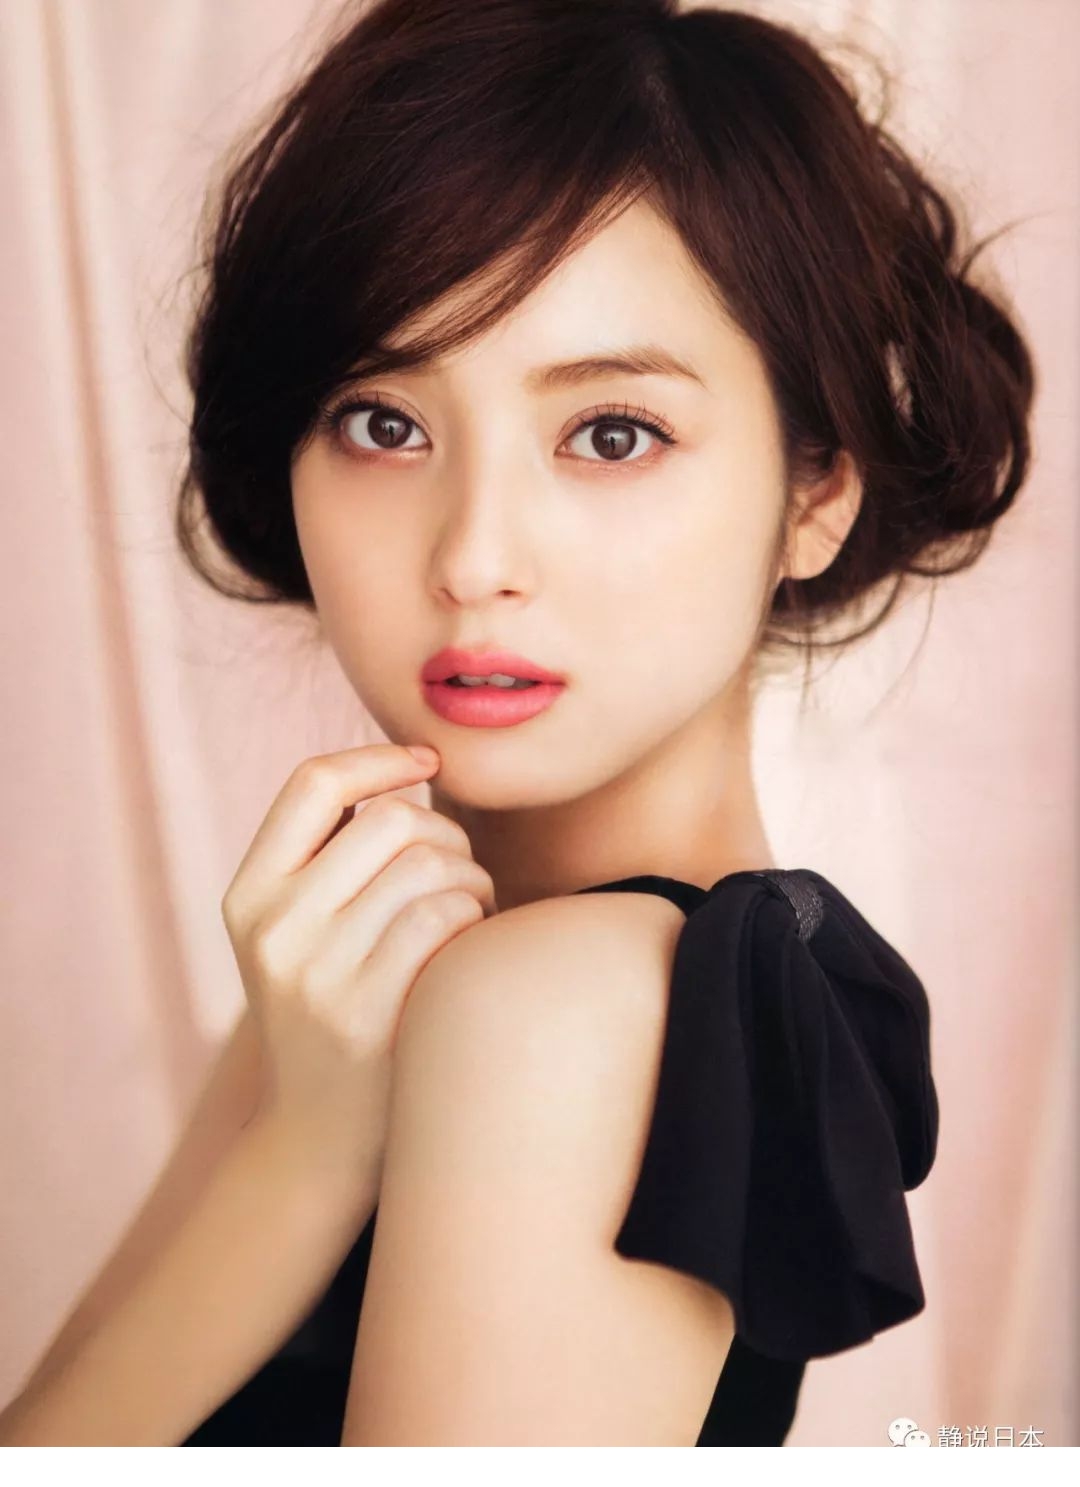 日本美女Coser写真美图欣赏 妹子皮肤白皙身材出众_3DM单机